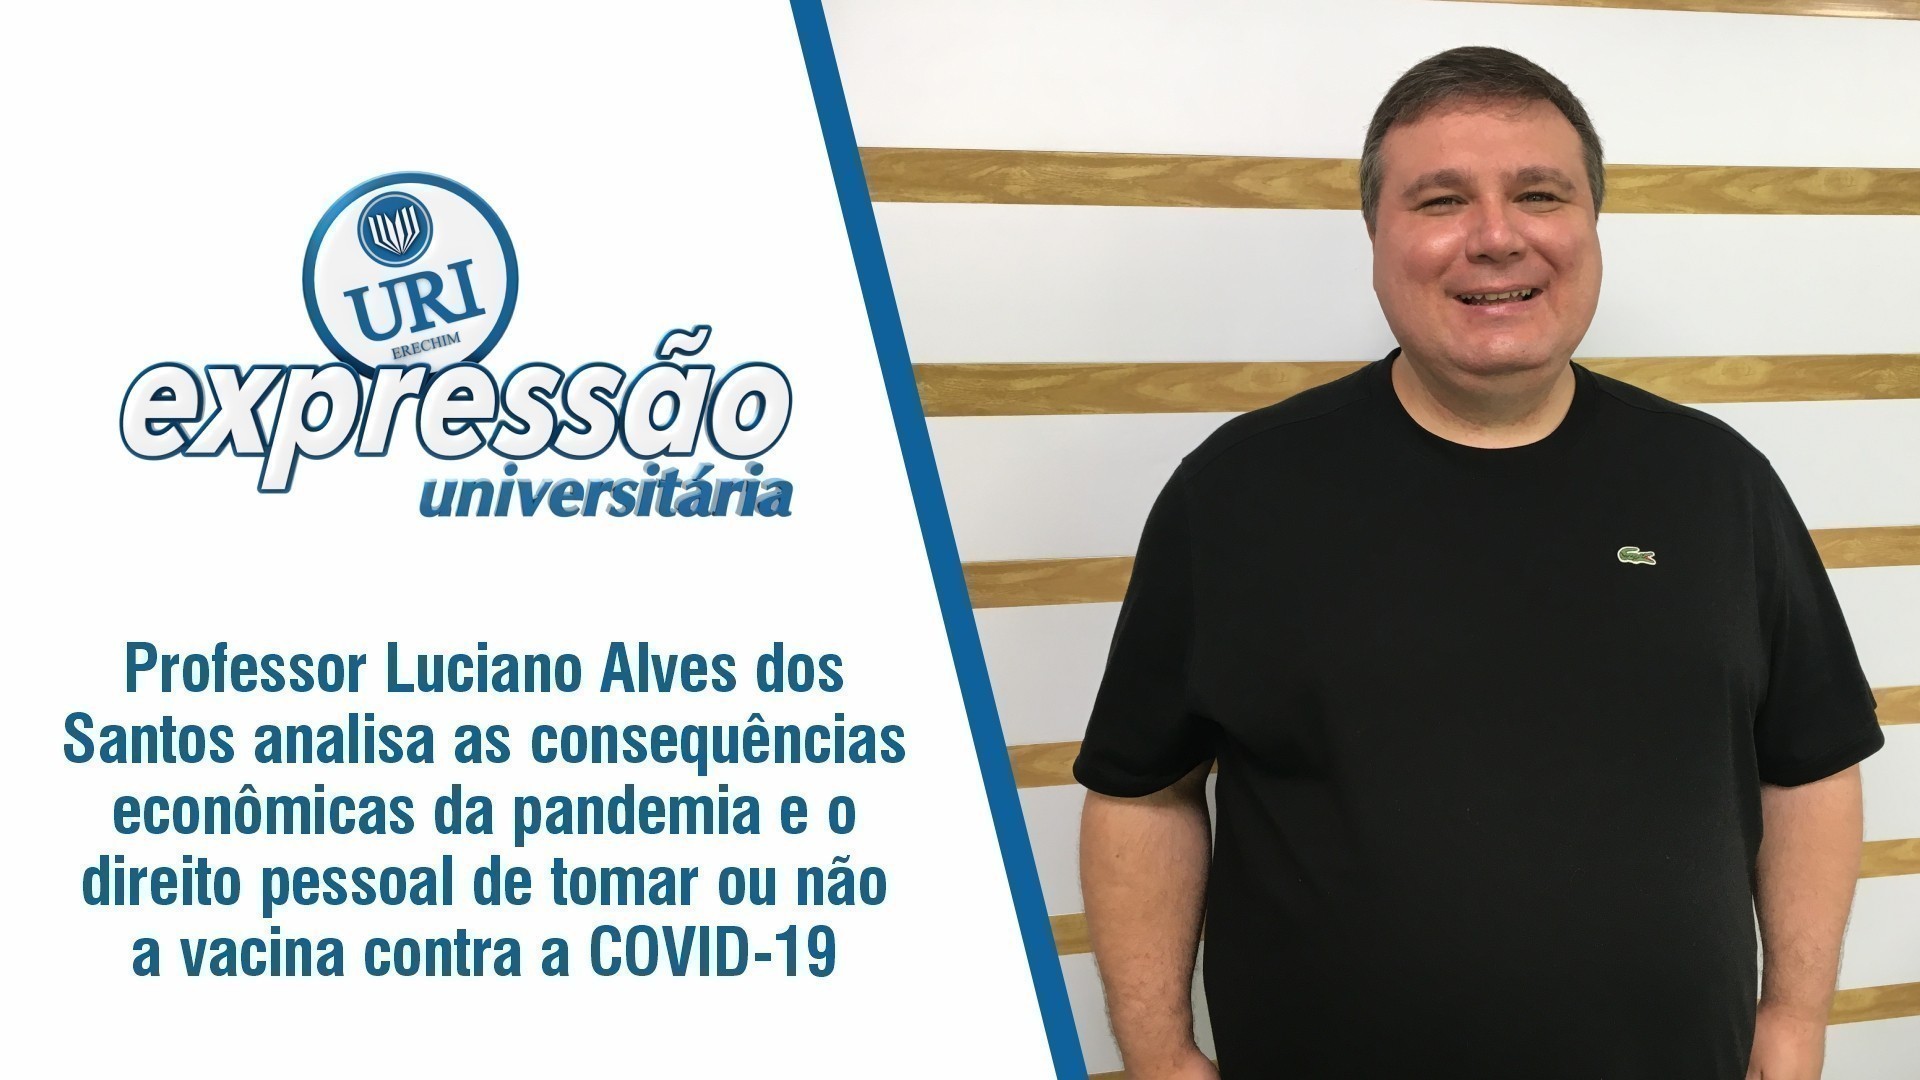 Professor Luciano Alves dos Santos analisa as consequências econômicas da pandemia e o direito pessoal de tomar ou não a vacina contra o COVID-19